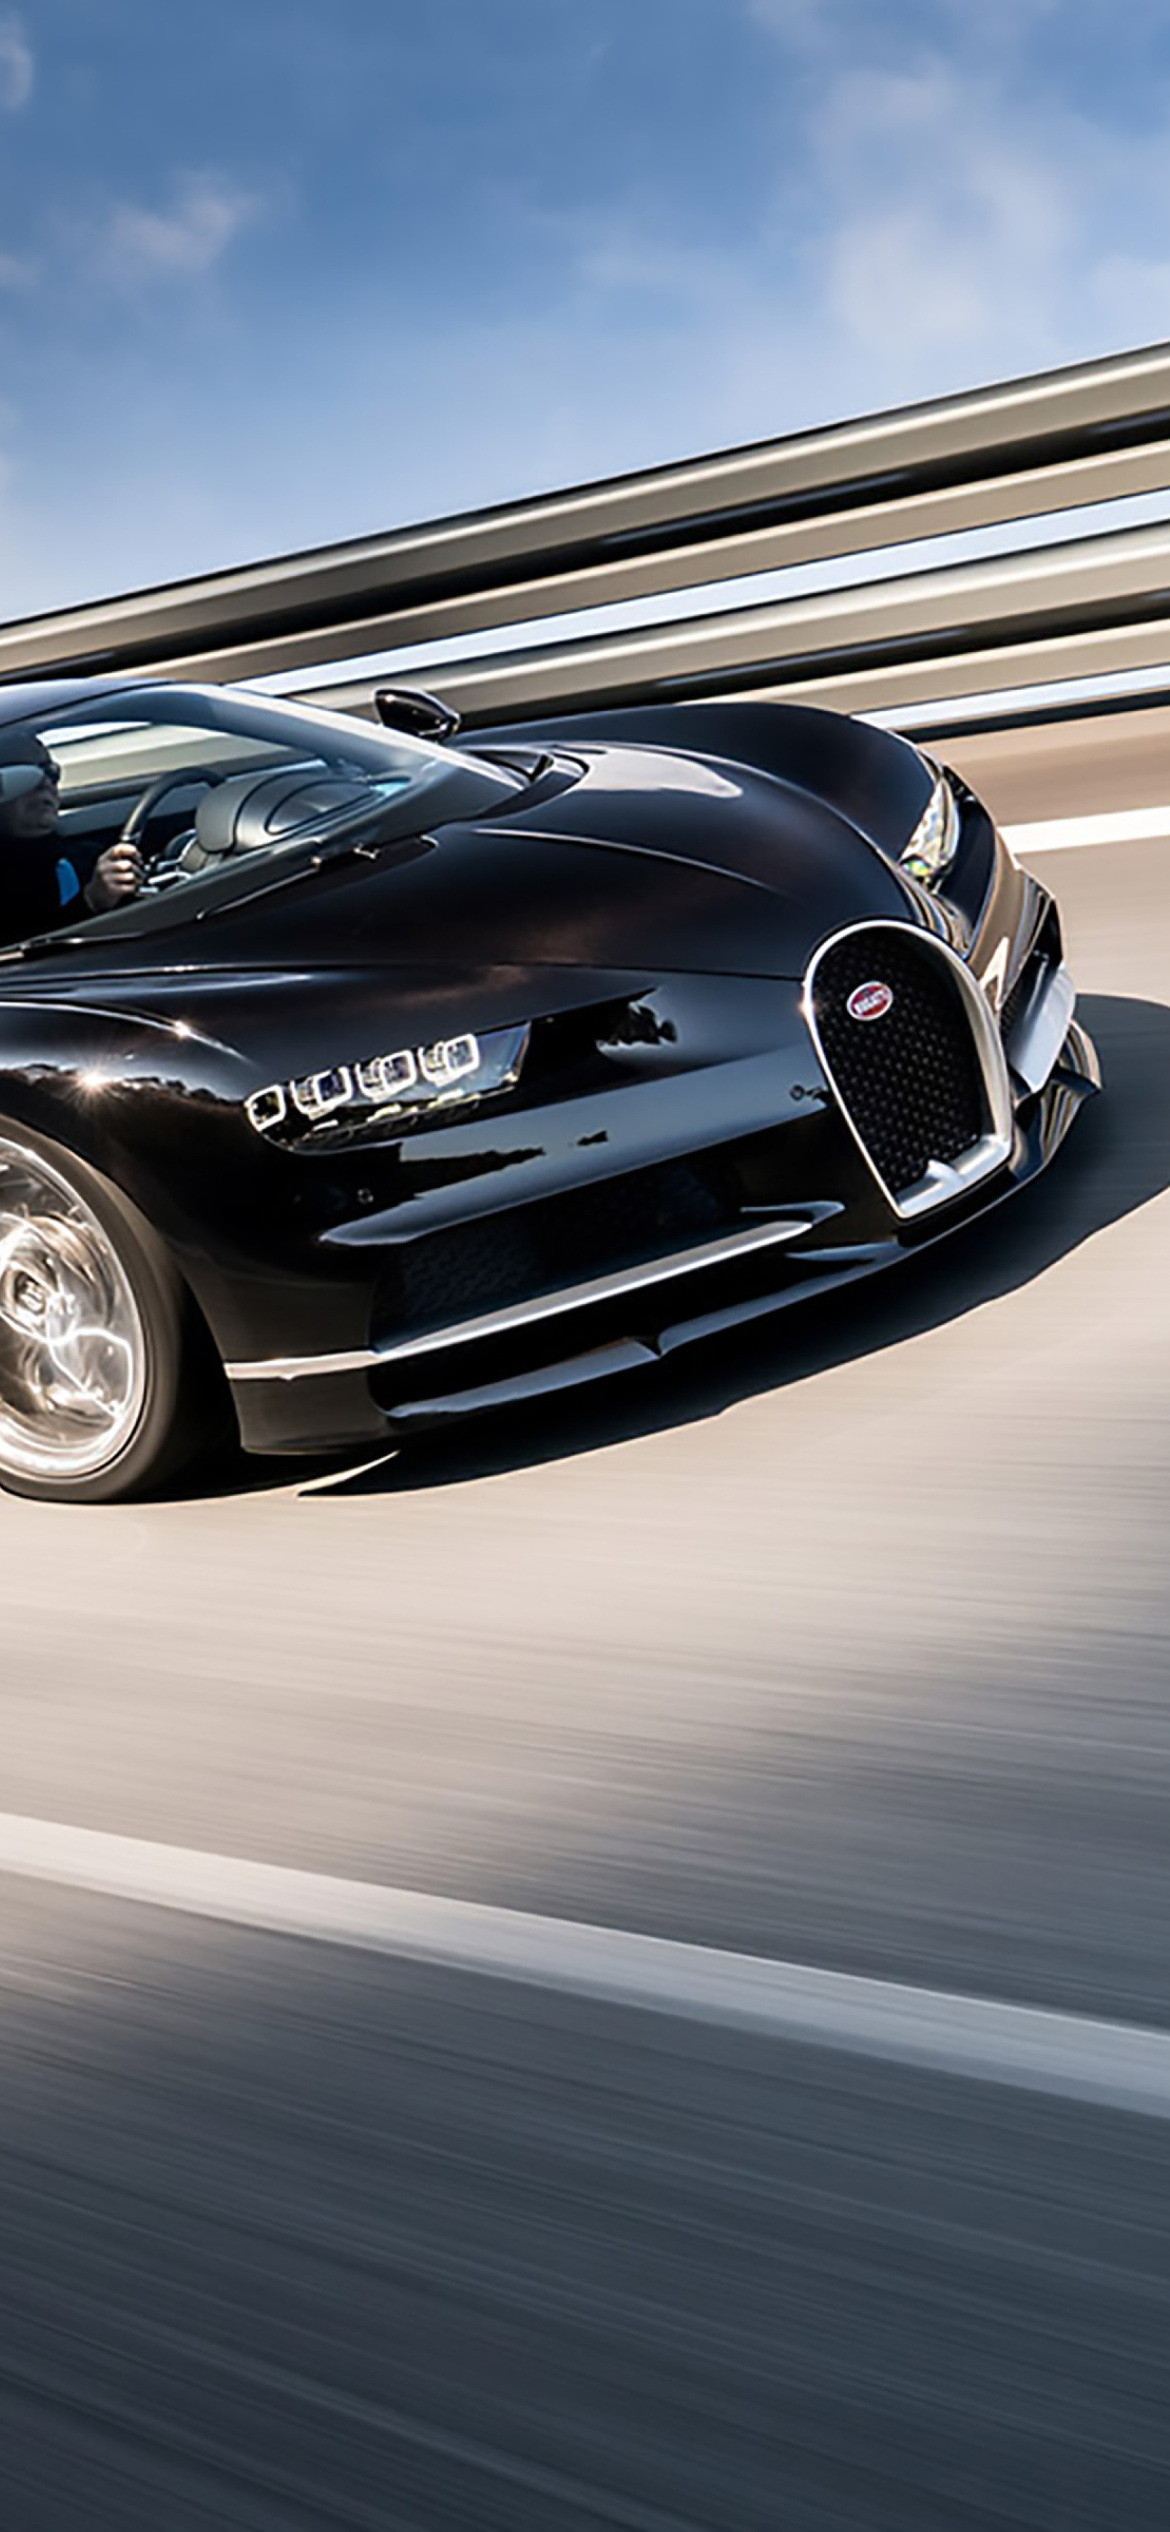 Bugatti Chiron Fastest Car in the World wallpaper 1170x2532